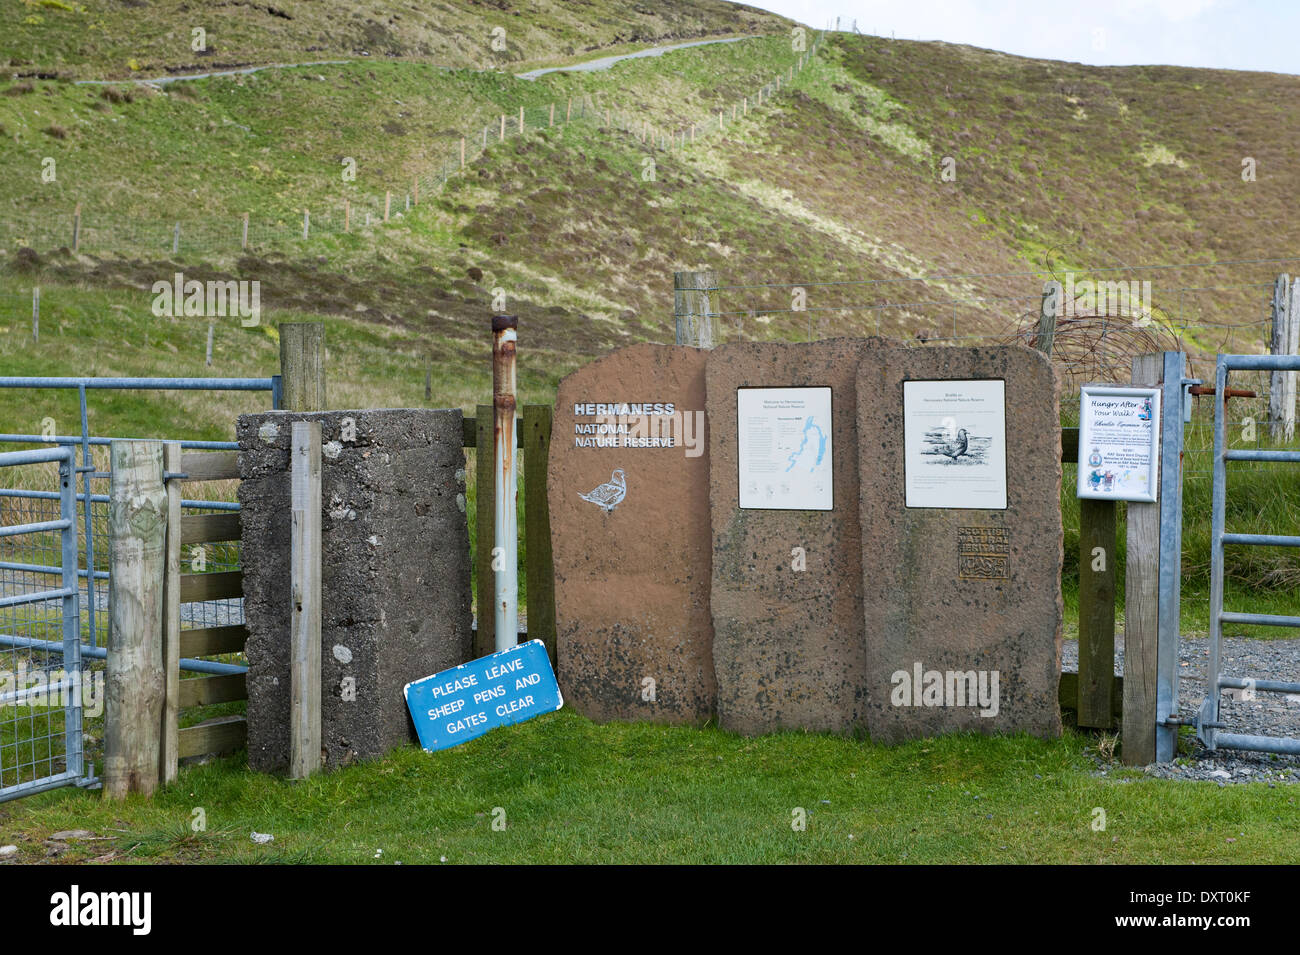 Visiotrs au conseil avis RSPB à Hermaness NNR, Unst, îles Shetland, Écosse, Royaume-Uni Banque D'Images